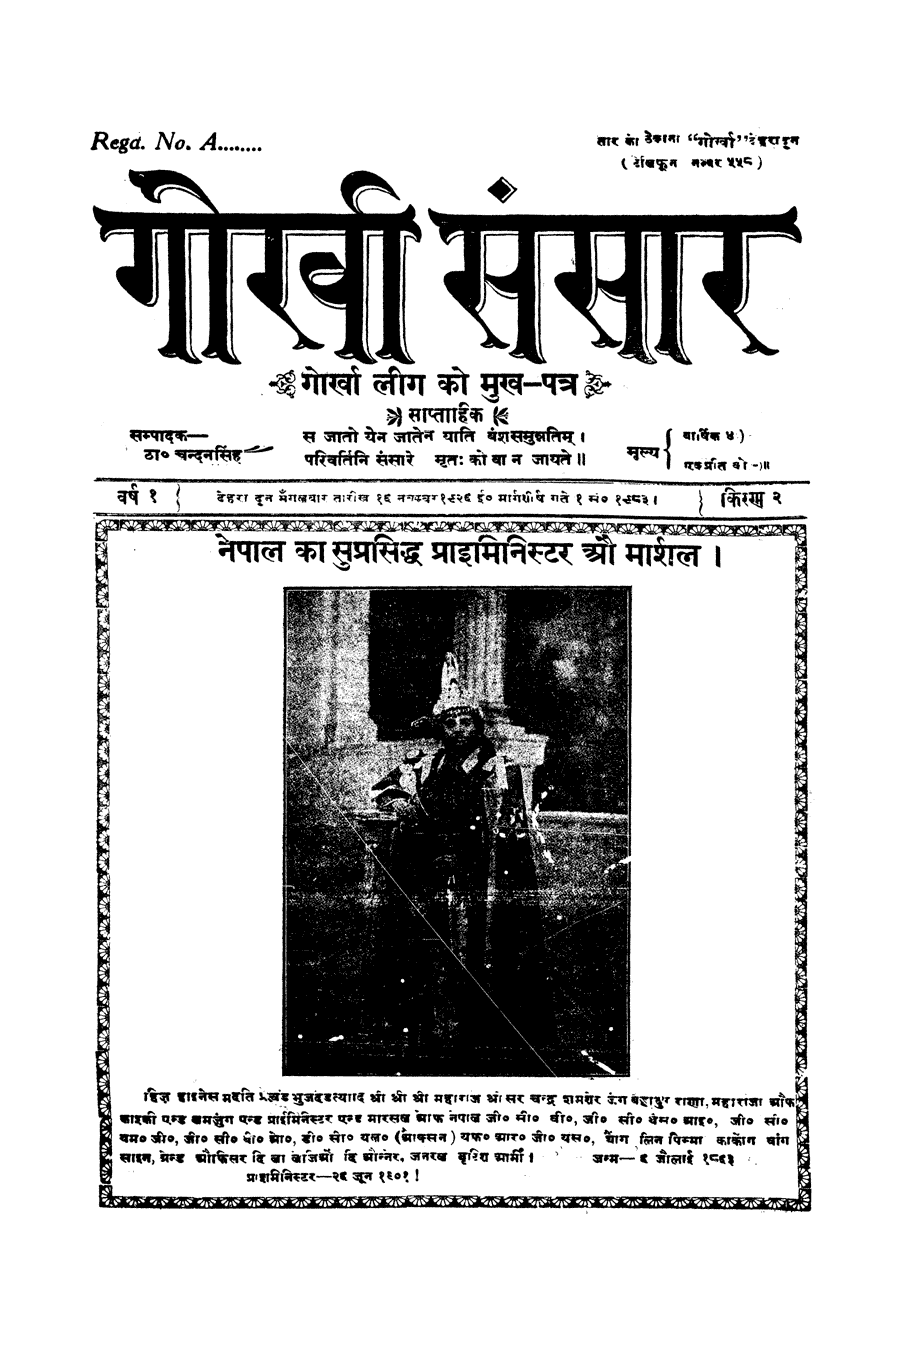 Gorkha Sansar, 16 Nov 1926, page 1